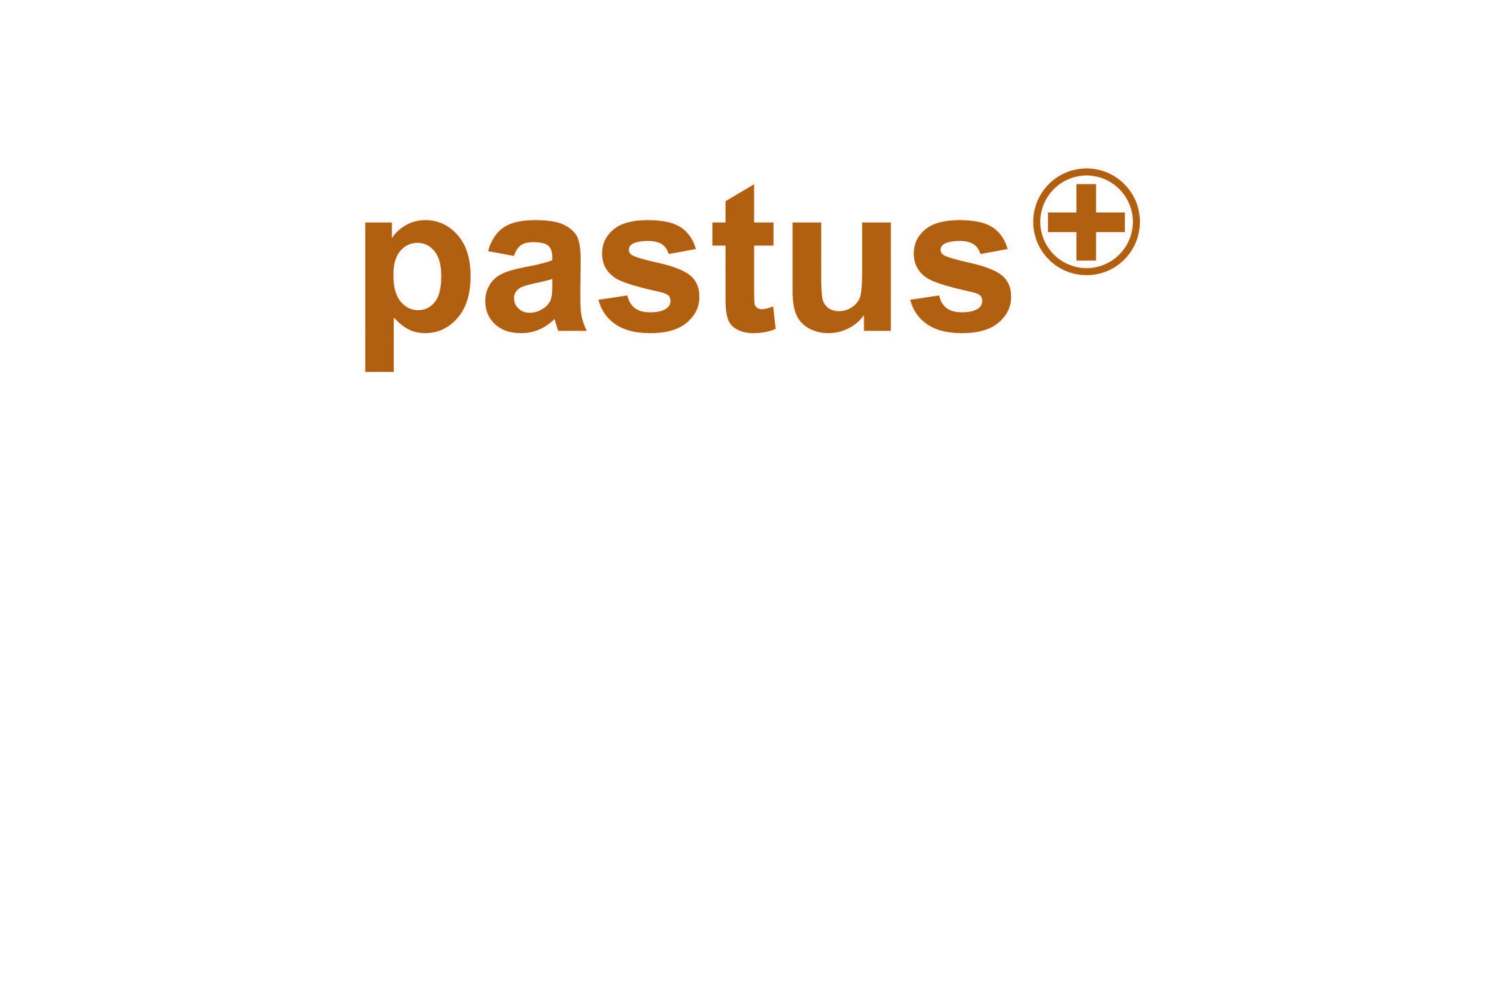 pastus+